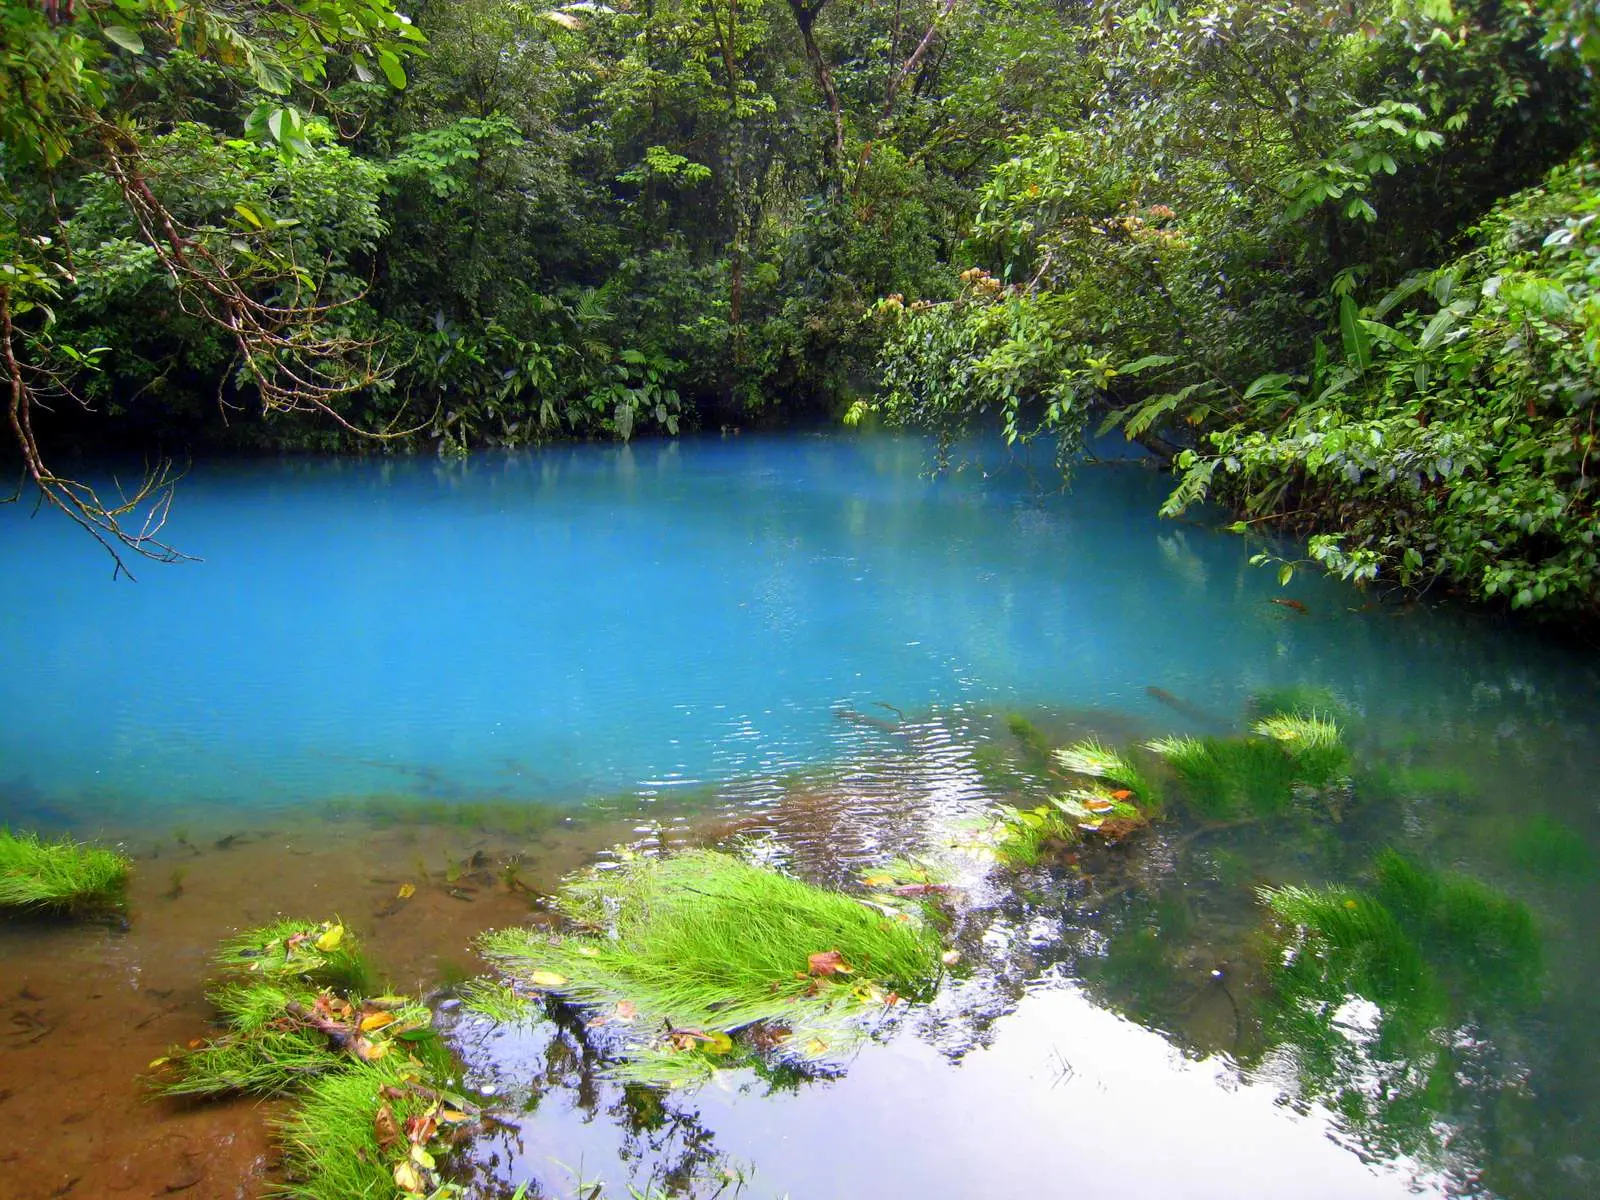 lagunas de costa rica - Cómo se llaman las lagunas de Costa Rica